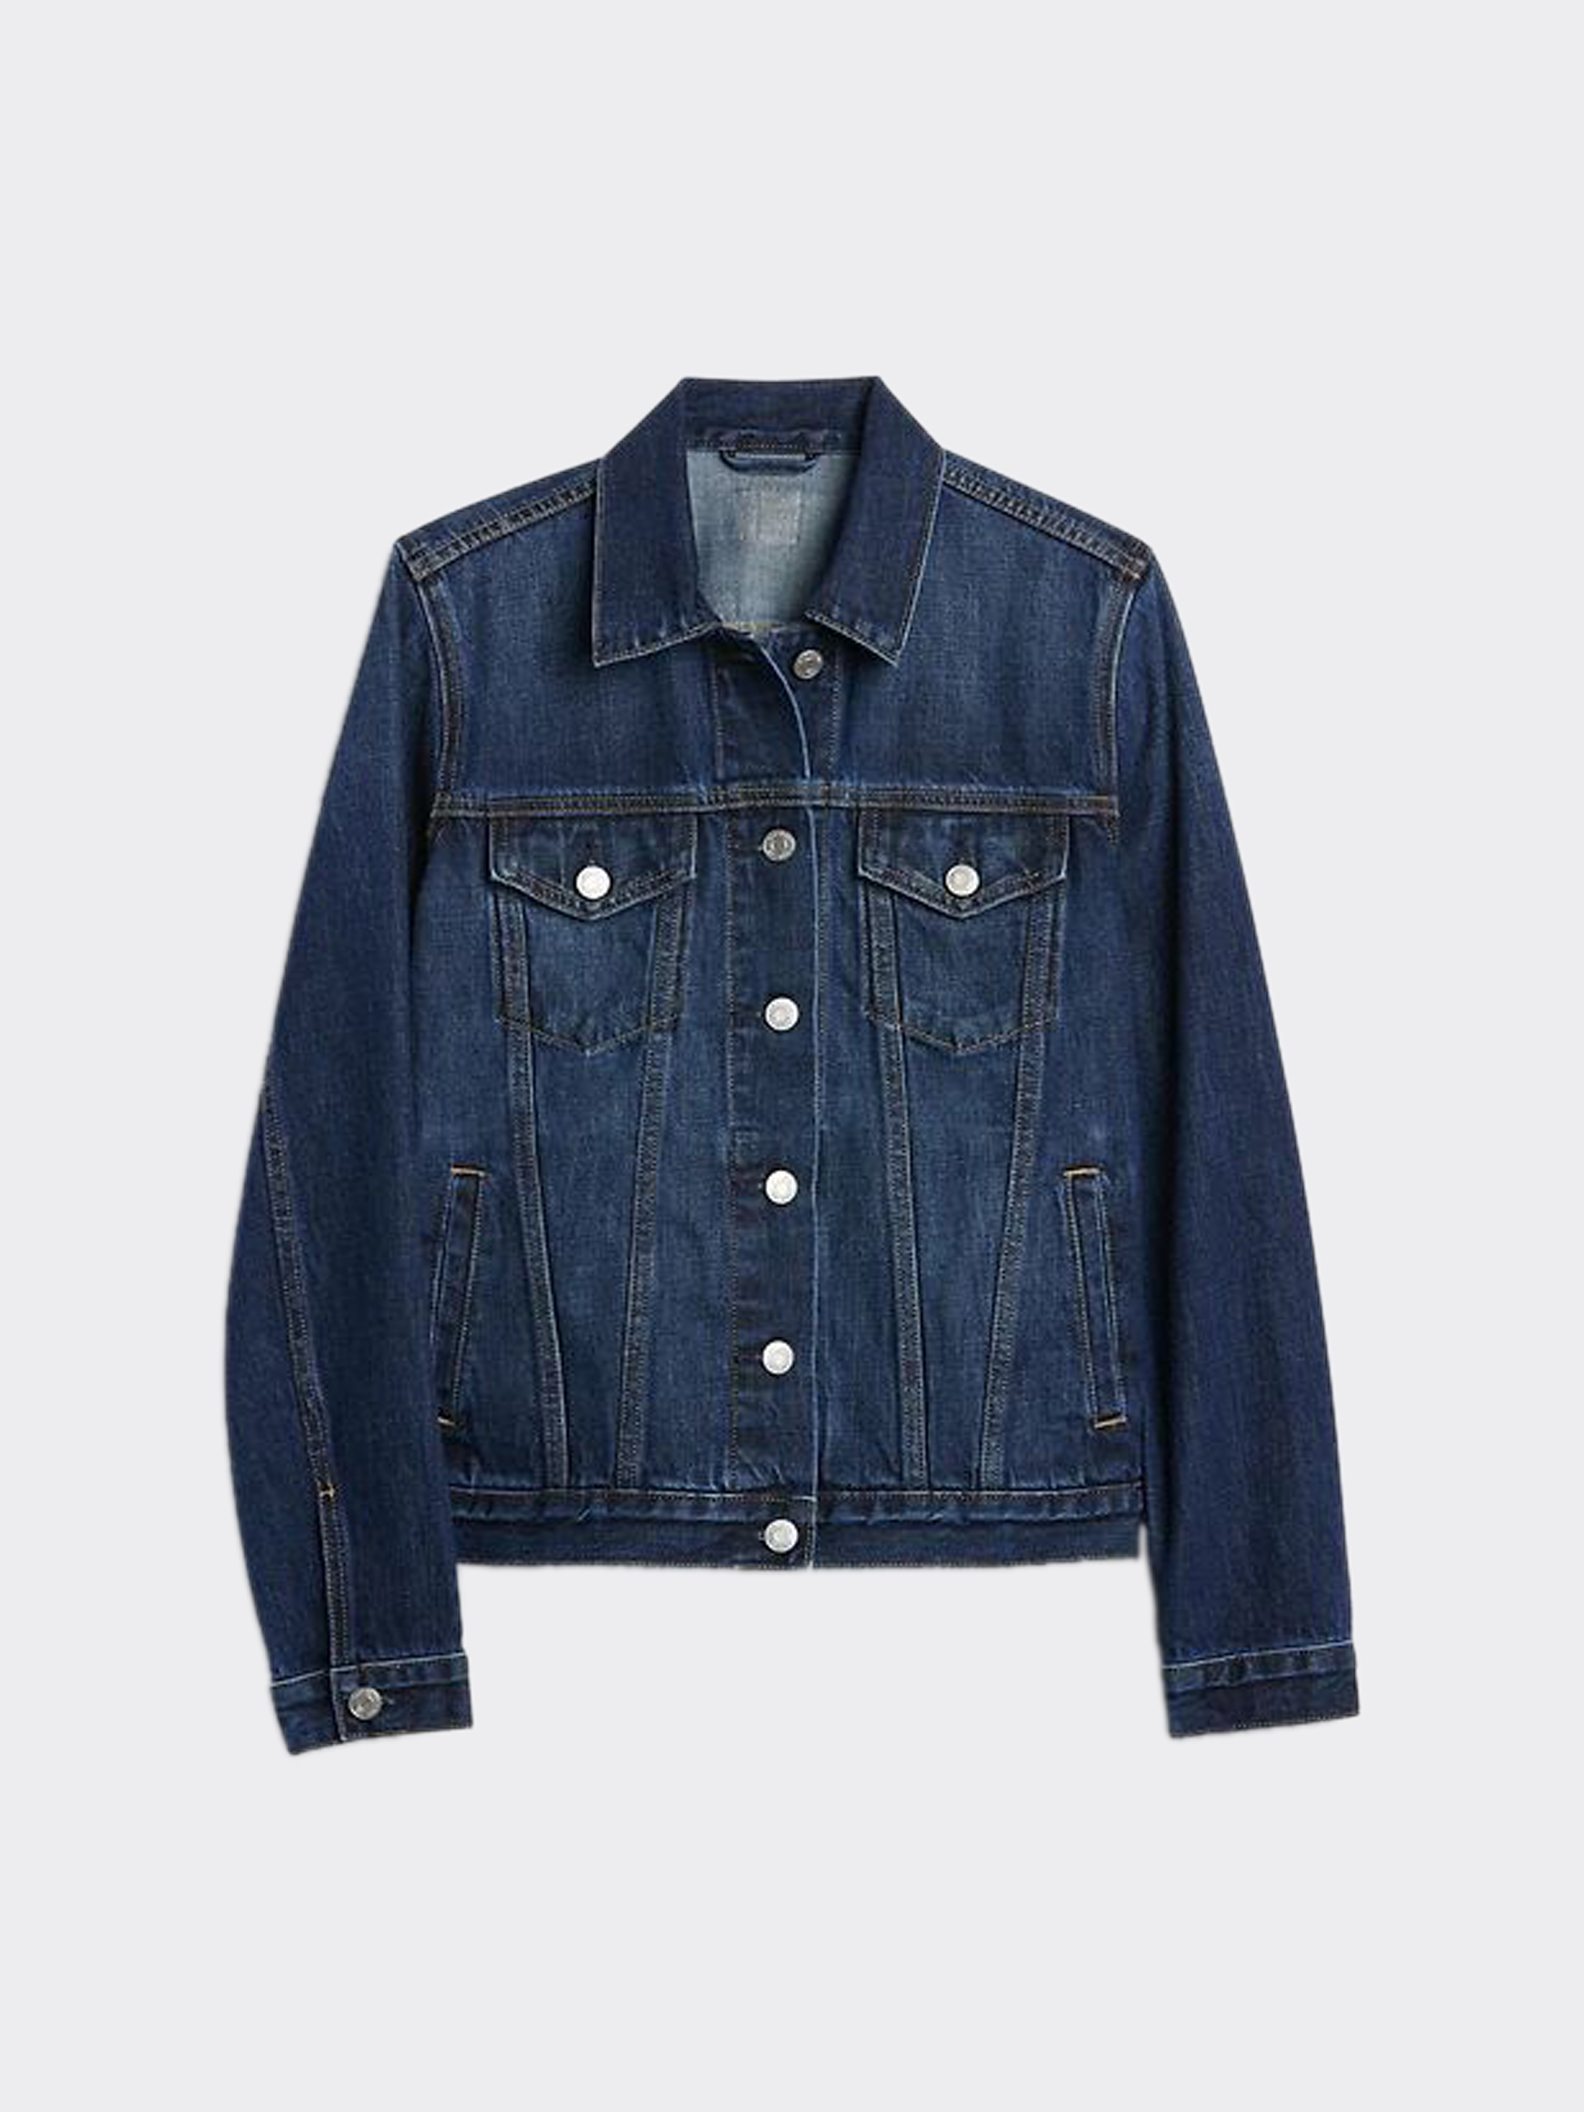 Mens Denim Jacket | Full Sleeves, 100% Cotton, Stone Washed